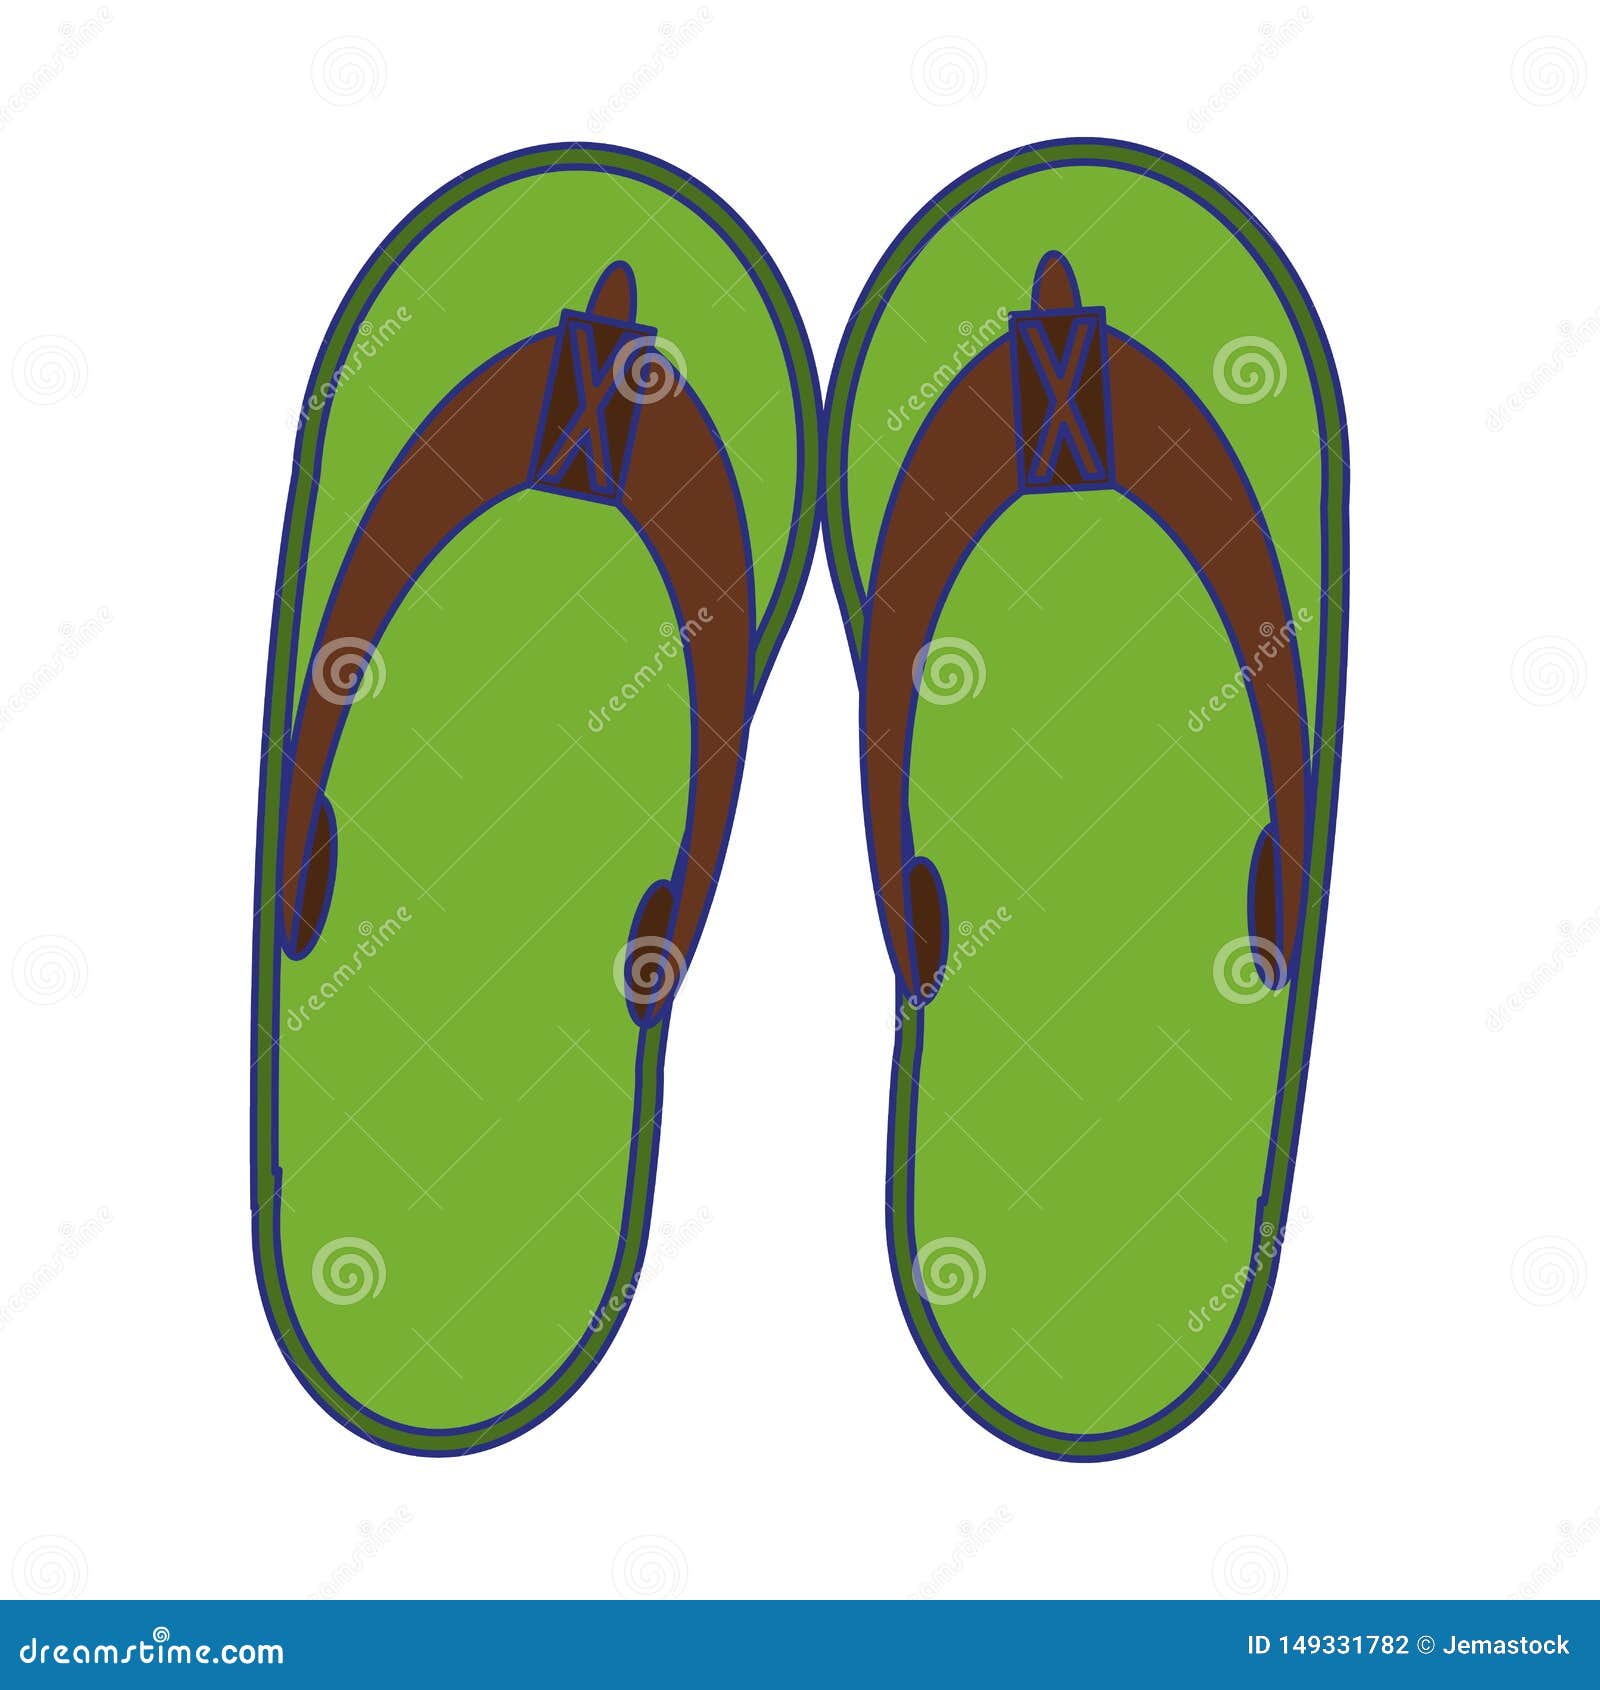 Flip Flops Sandals Footwear Isolated Cartoon Stock Vector ...